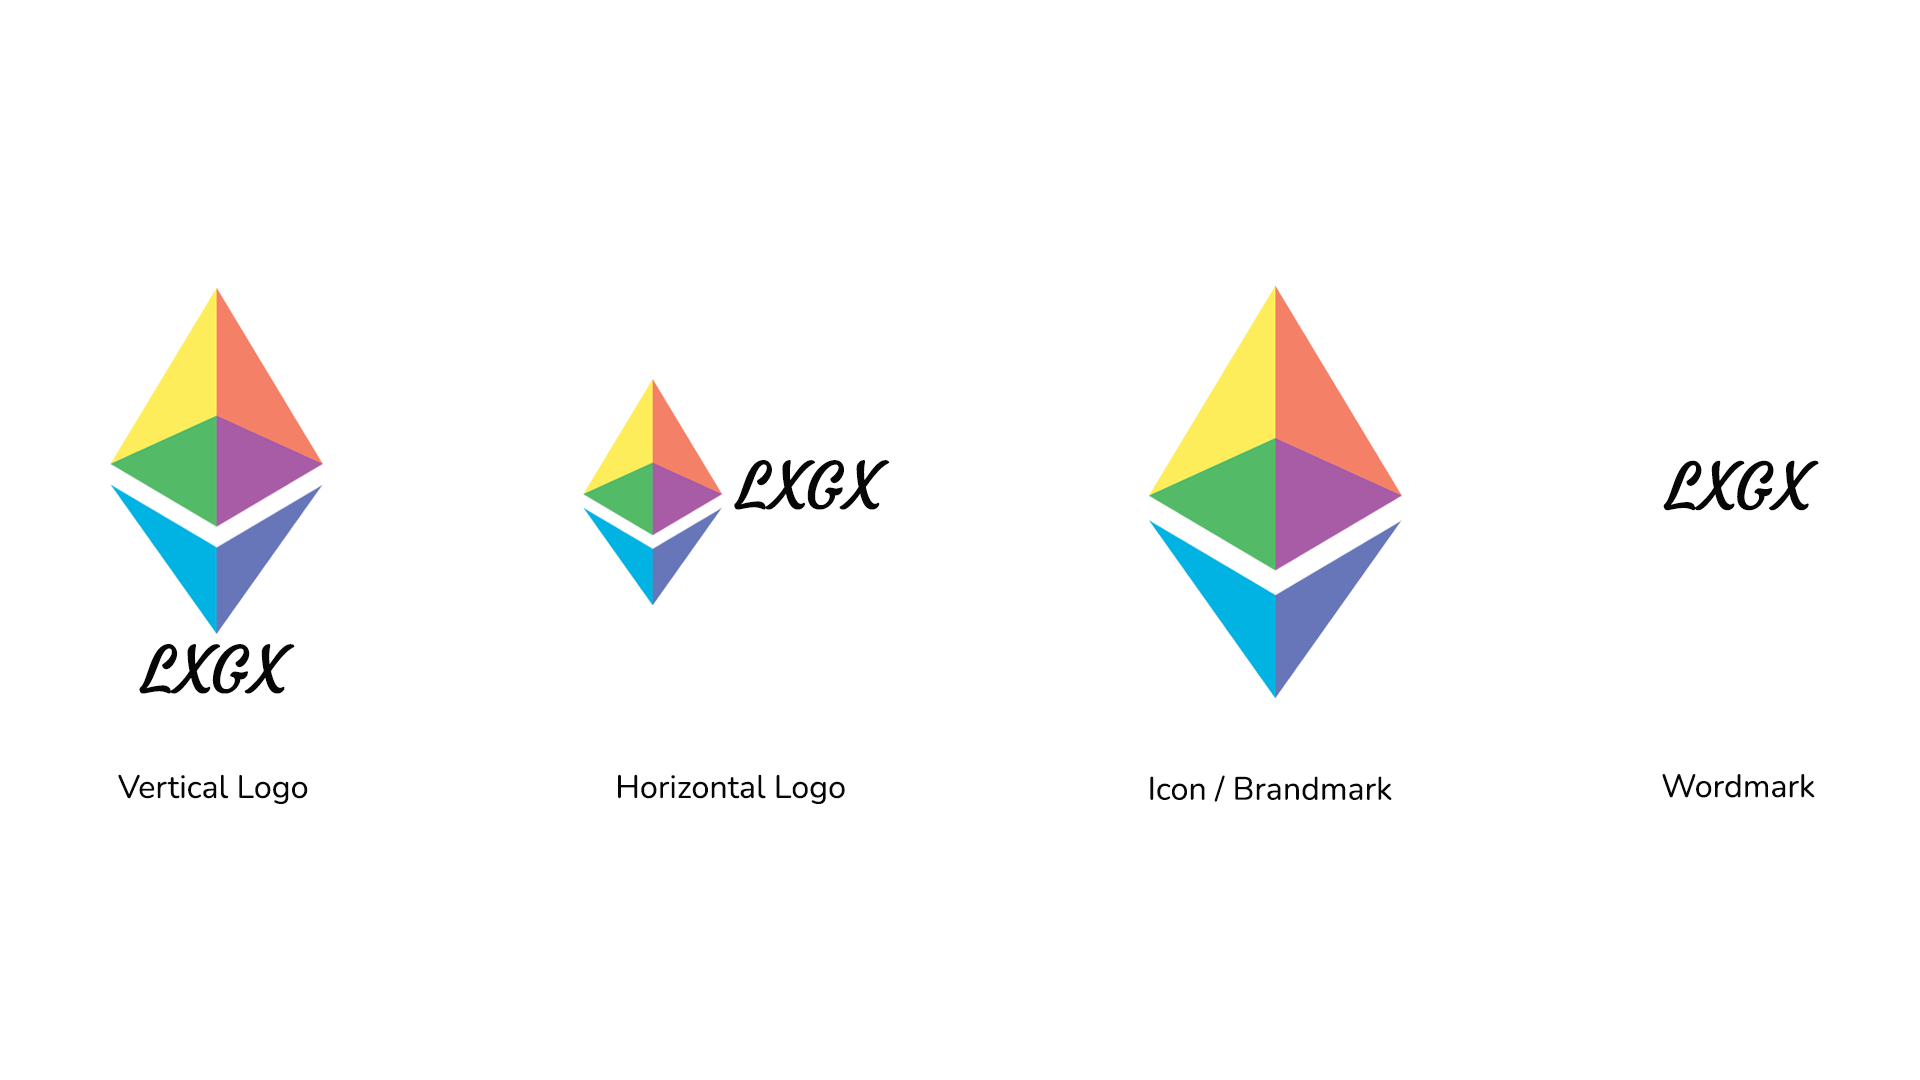 bridgepixel-logo-package-type